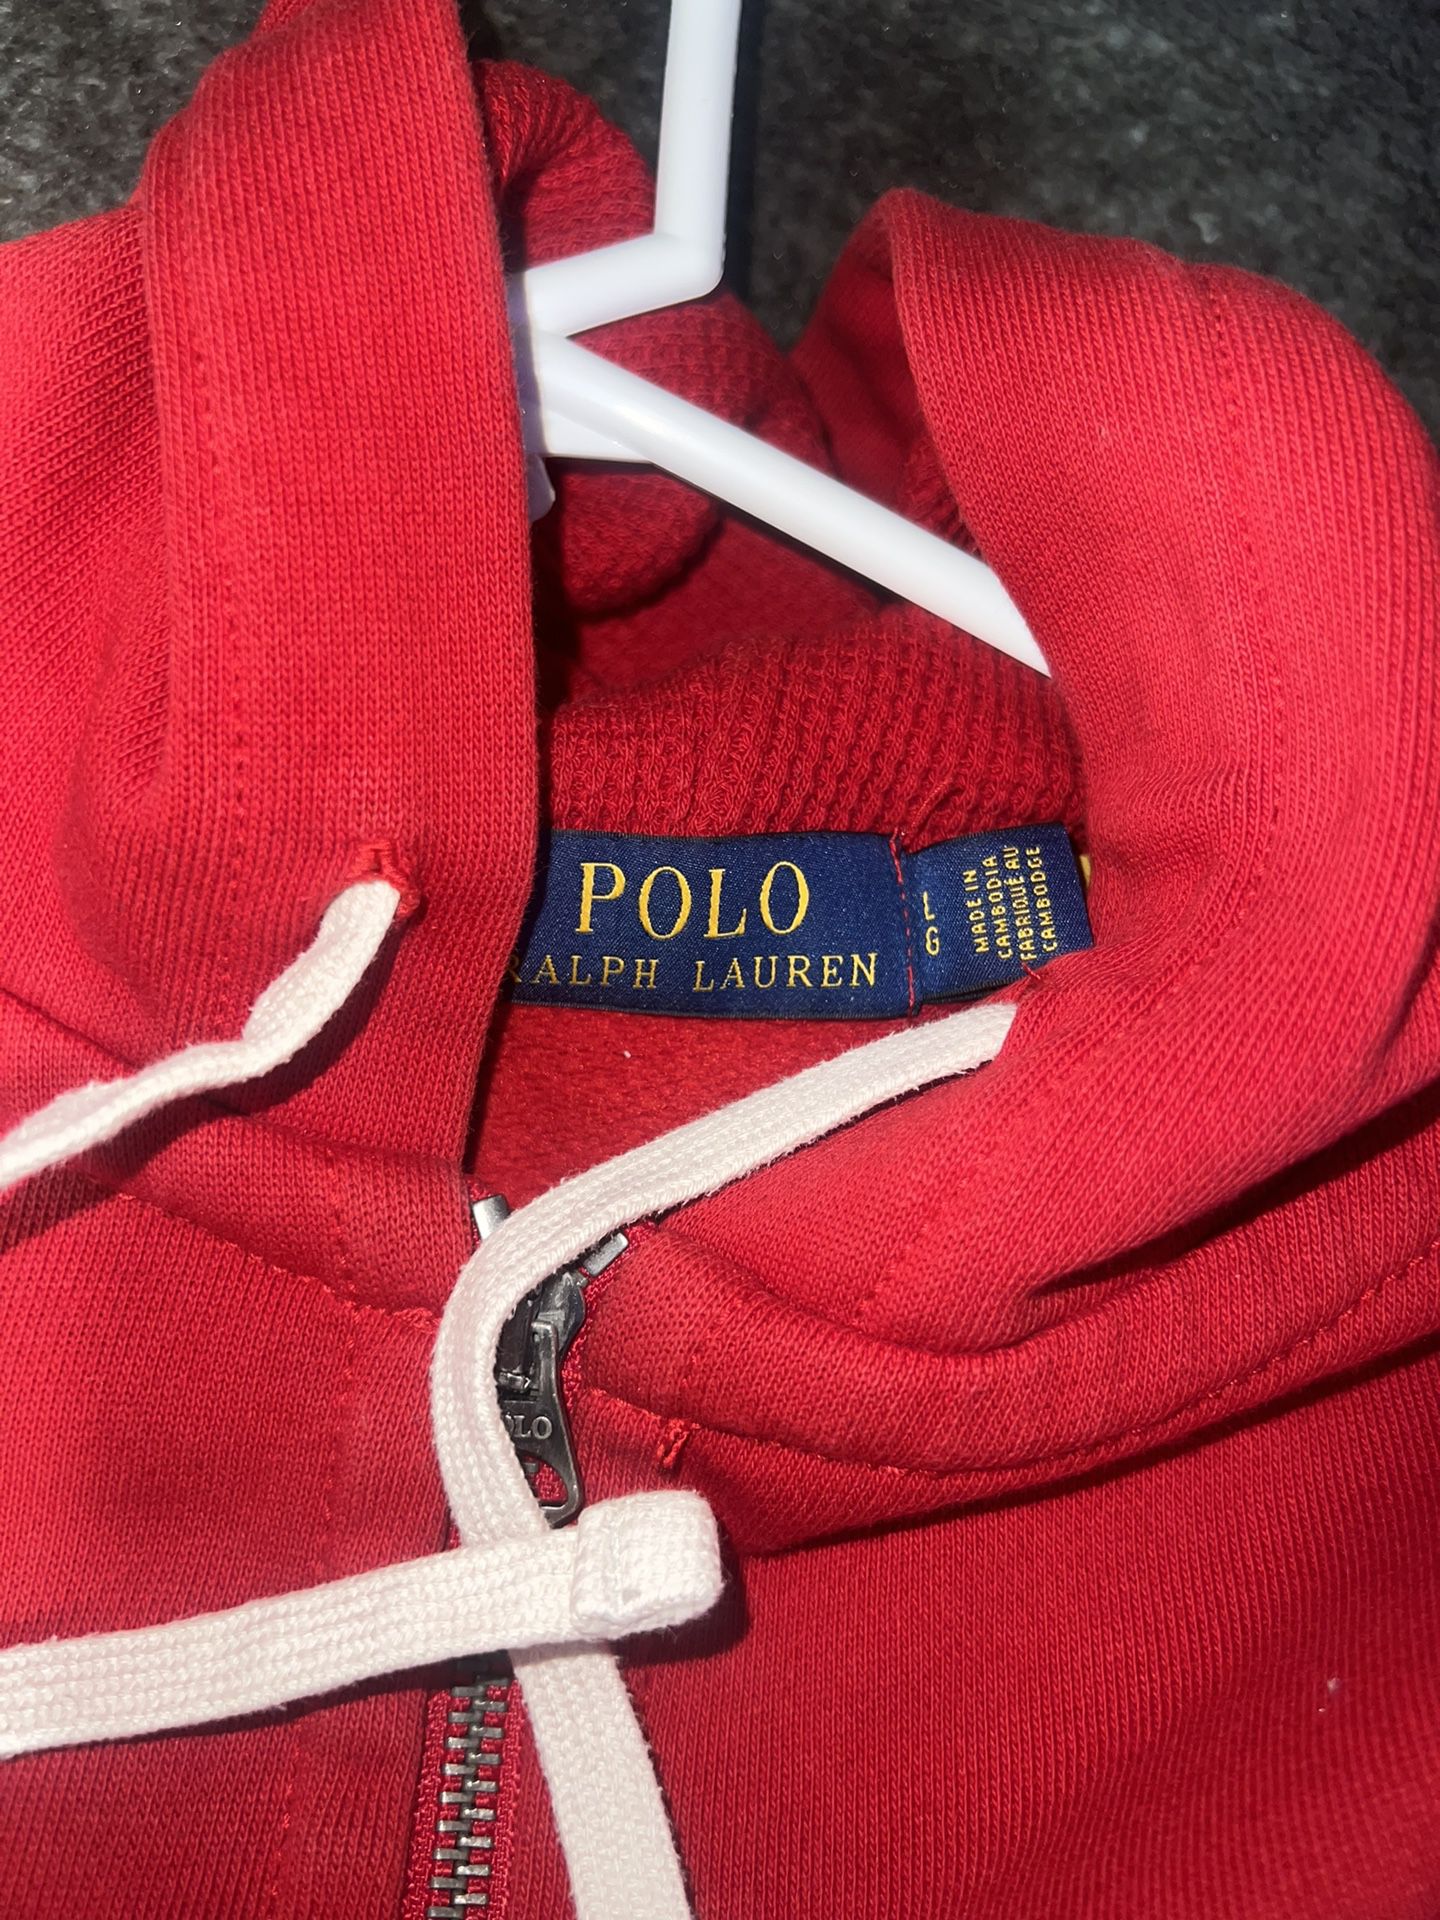 Polo Ralph Lauren Jacket Size Large 